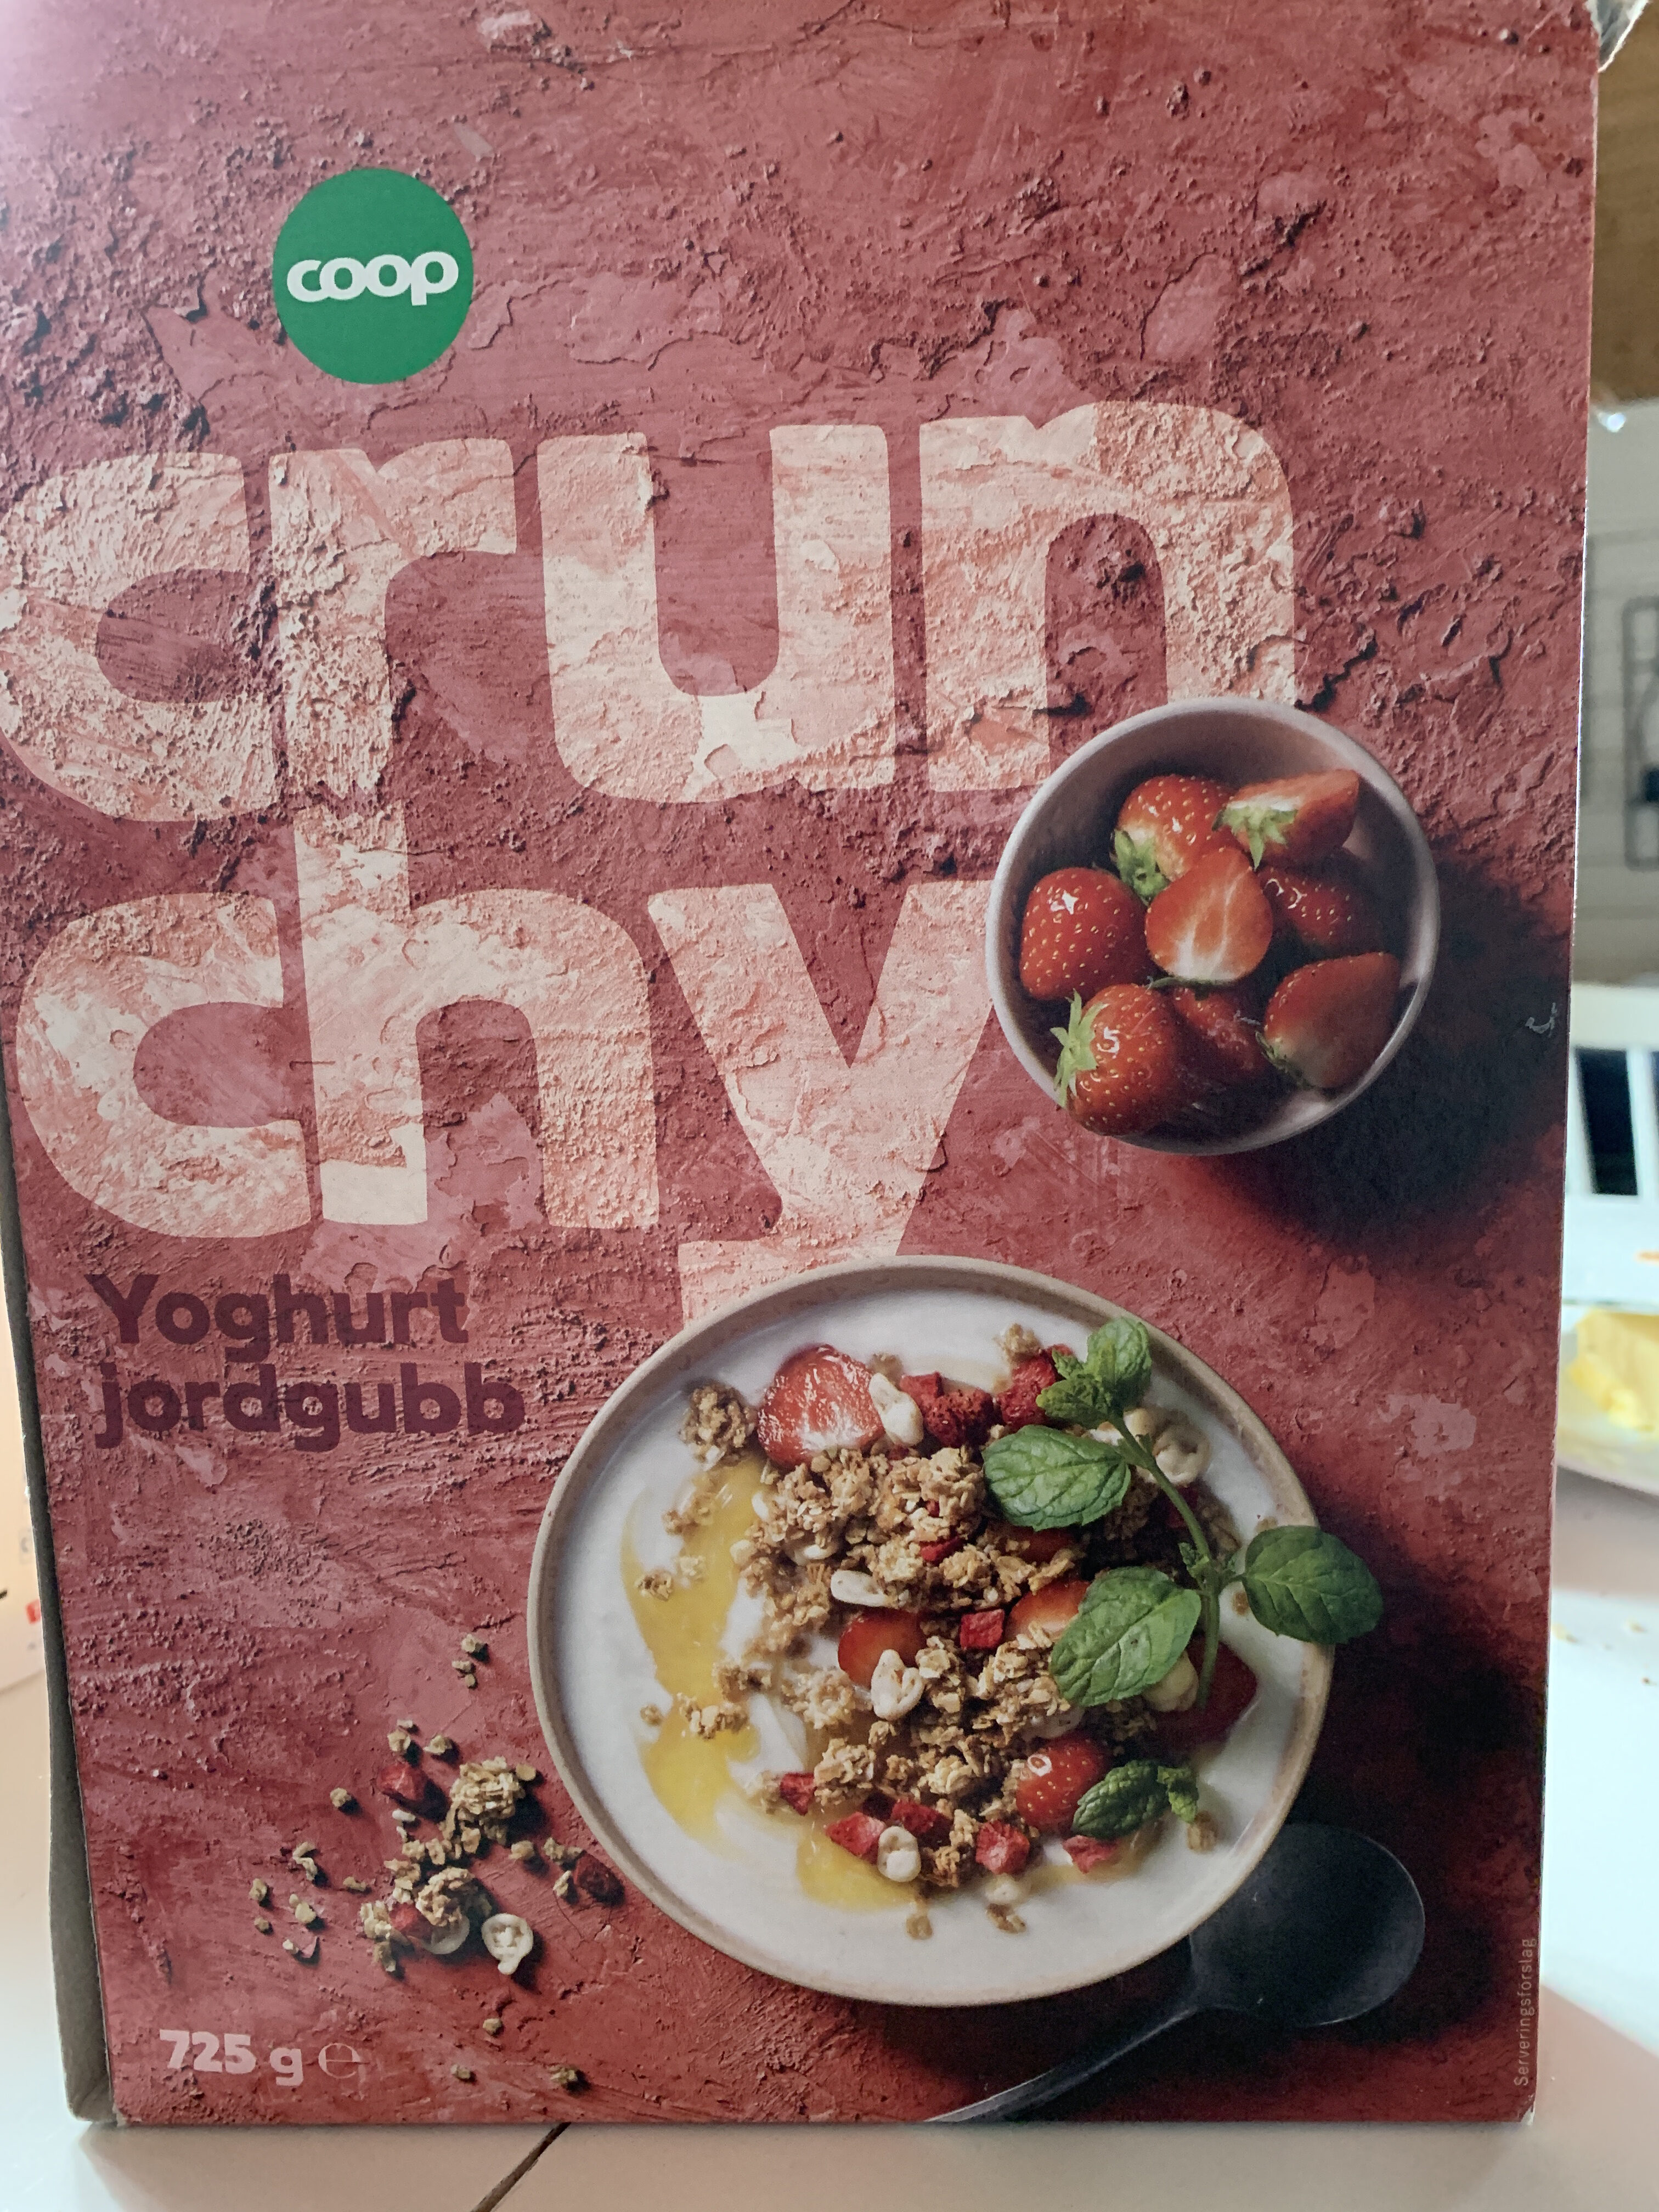 Crunchy yogurt jordgubb - Produkt - sv